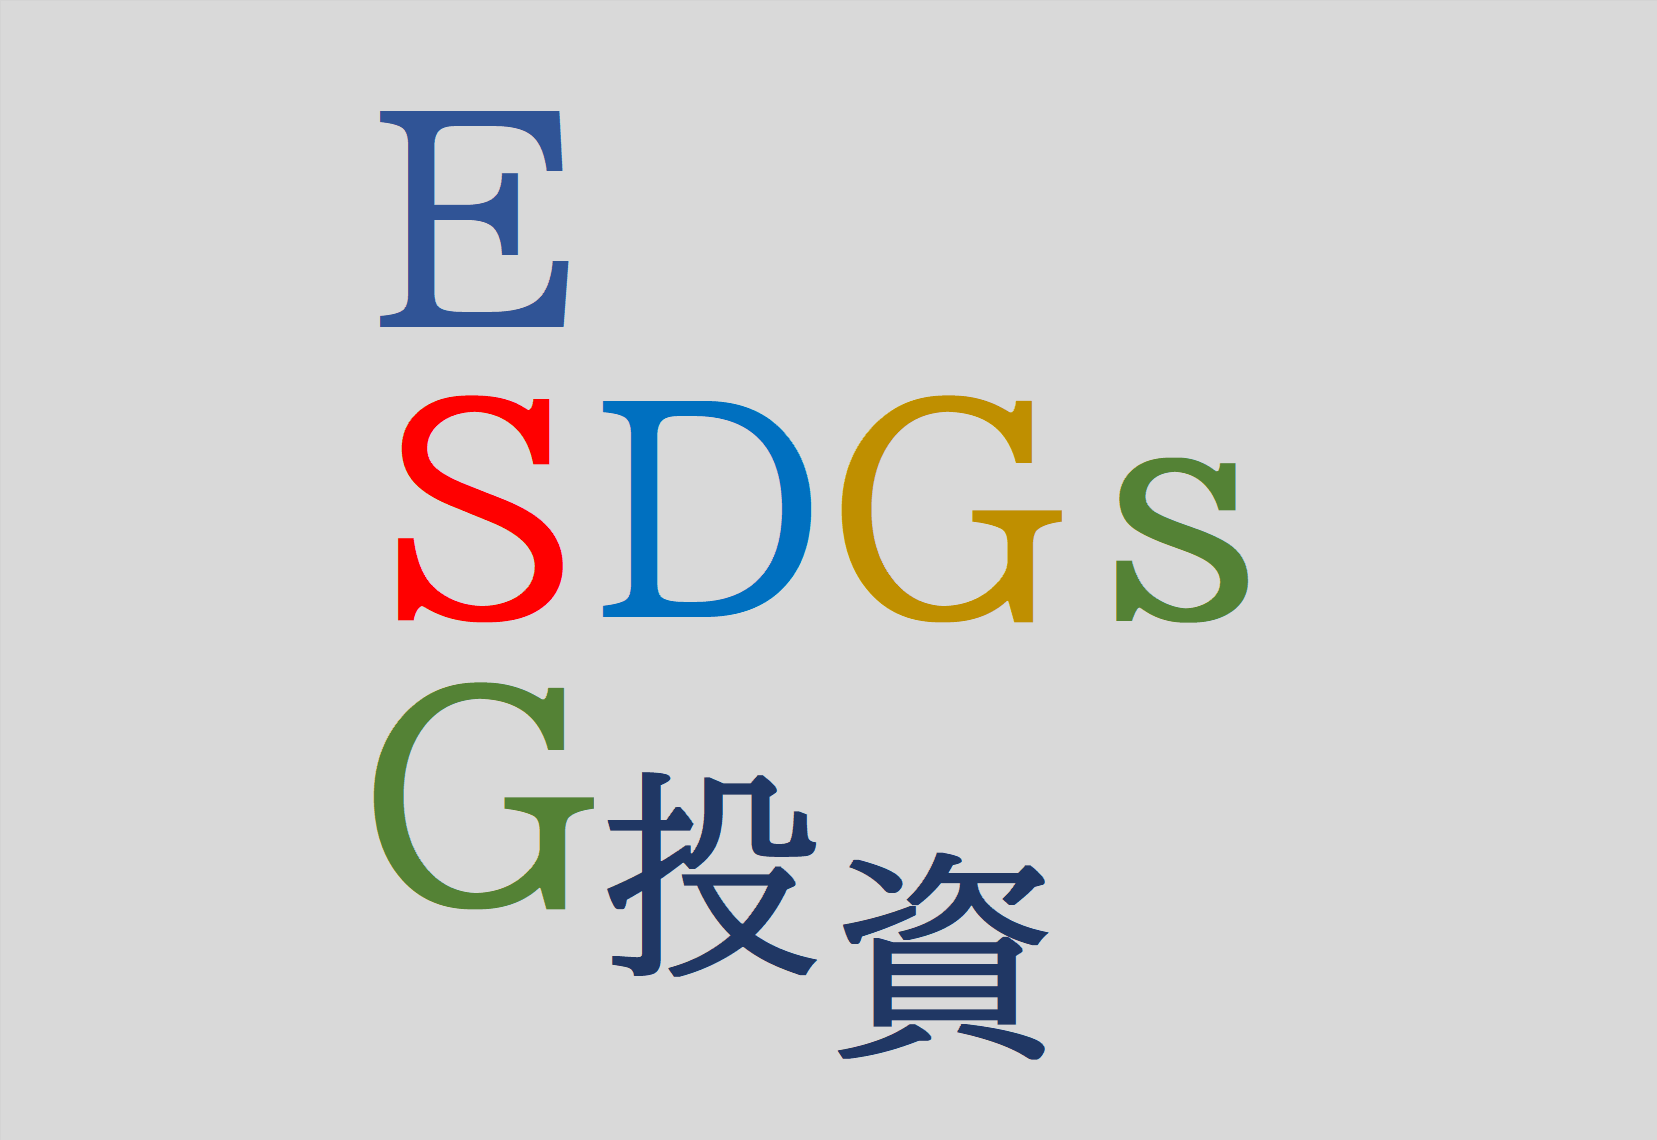 ESG投資について。SDGsの専門家、SDGsのセミナー講師が得意な、行政書士法人スマイル(石川県)がご説明します！